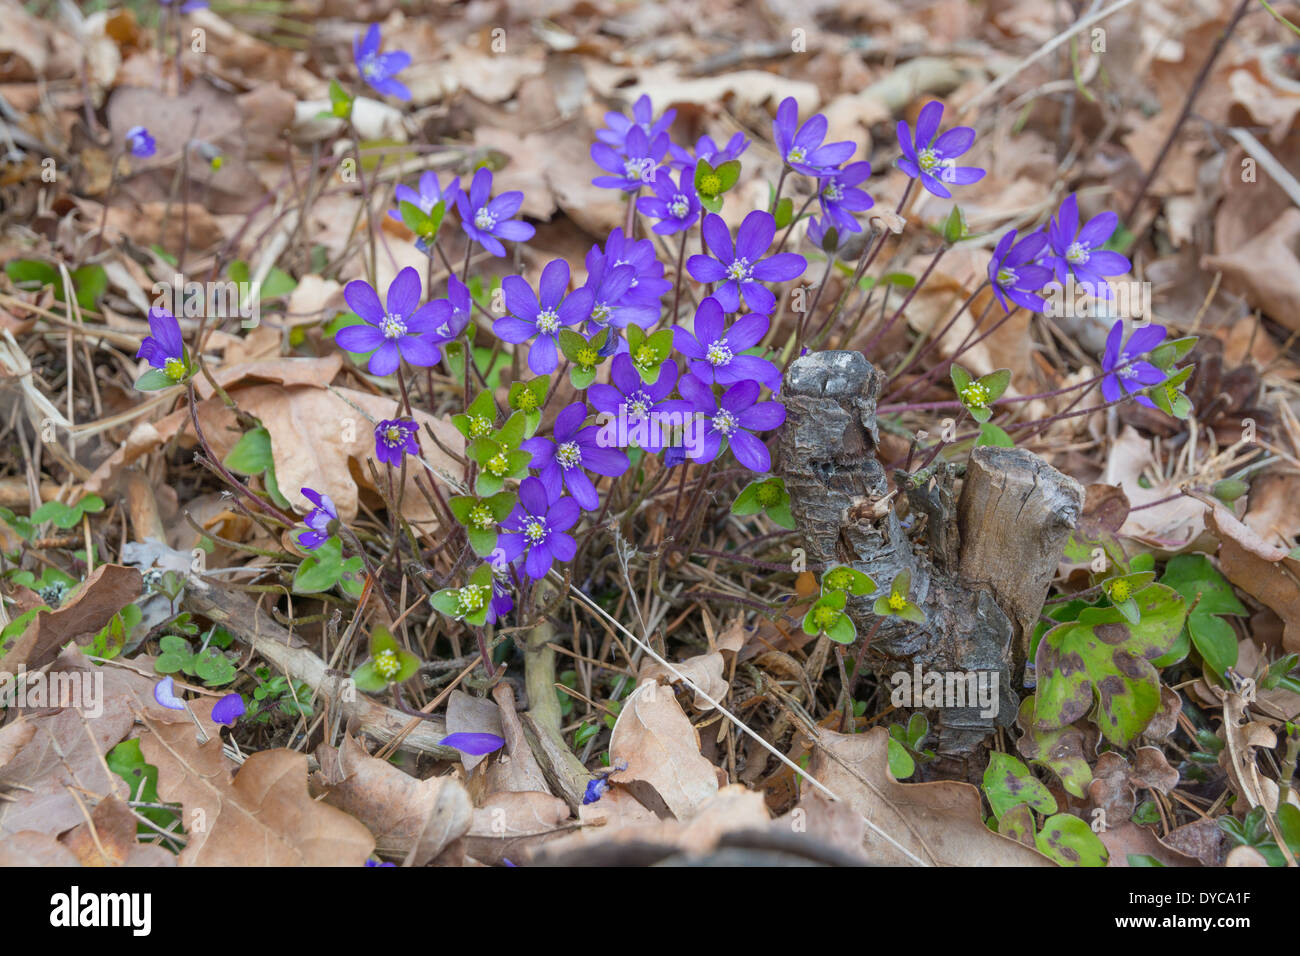 Blue liverwort (Hepatica nobilis) in oak and pine forest, April, Stockholm, Sweden. Stock Photo